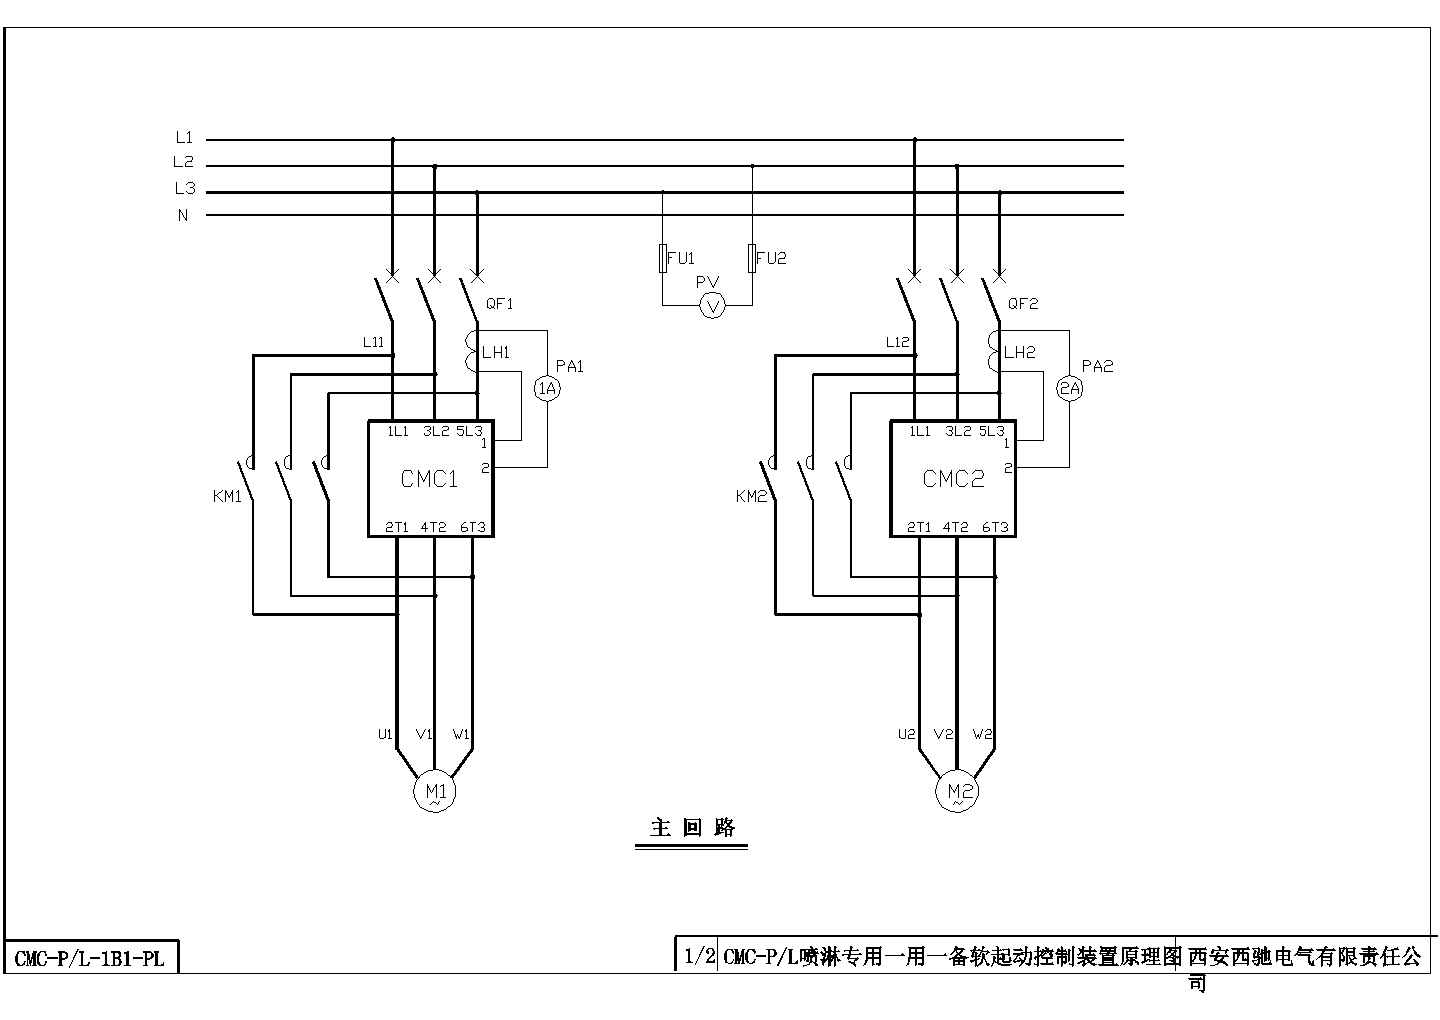 【西安市】某电气公司cmc-P(L)喷淋专用一用一备软起动控制装置原理图